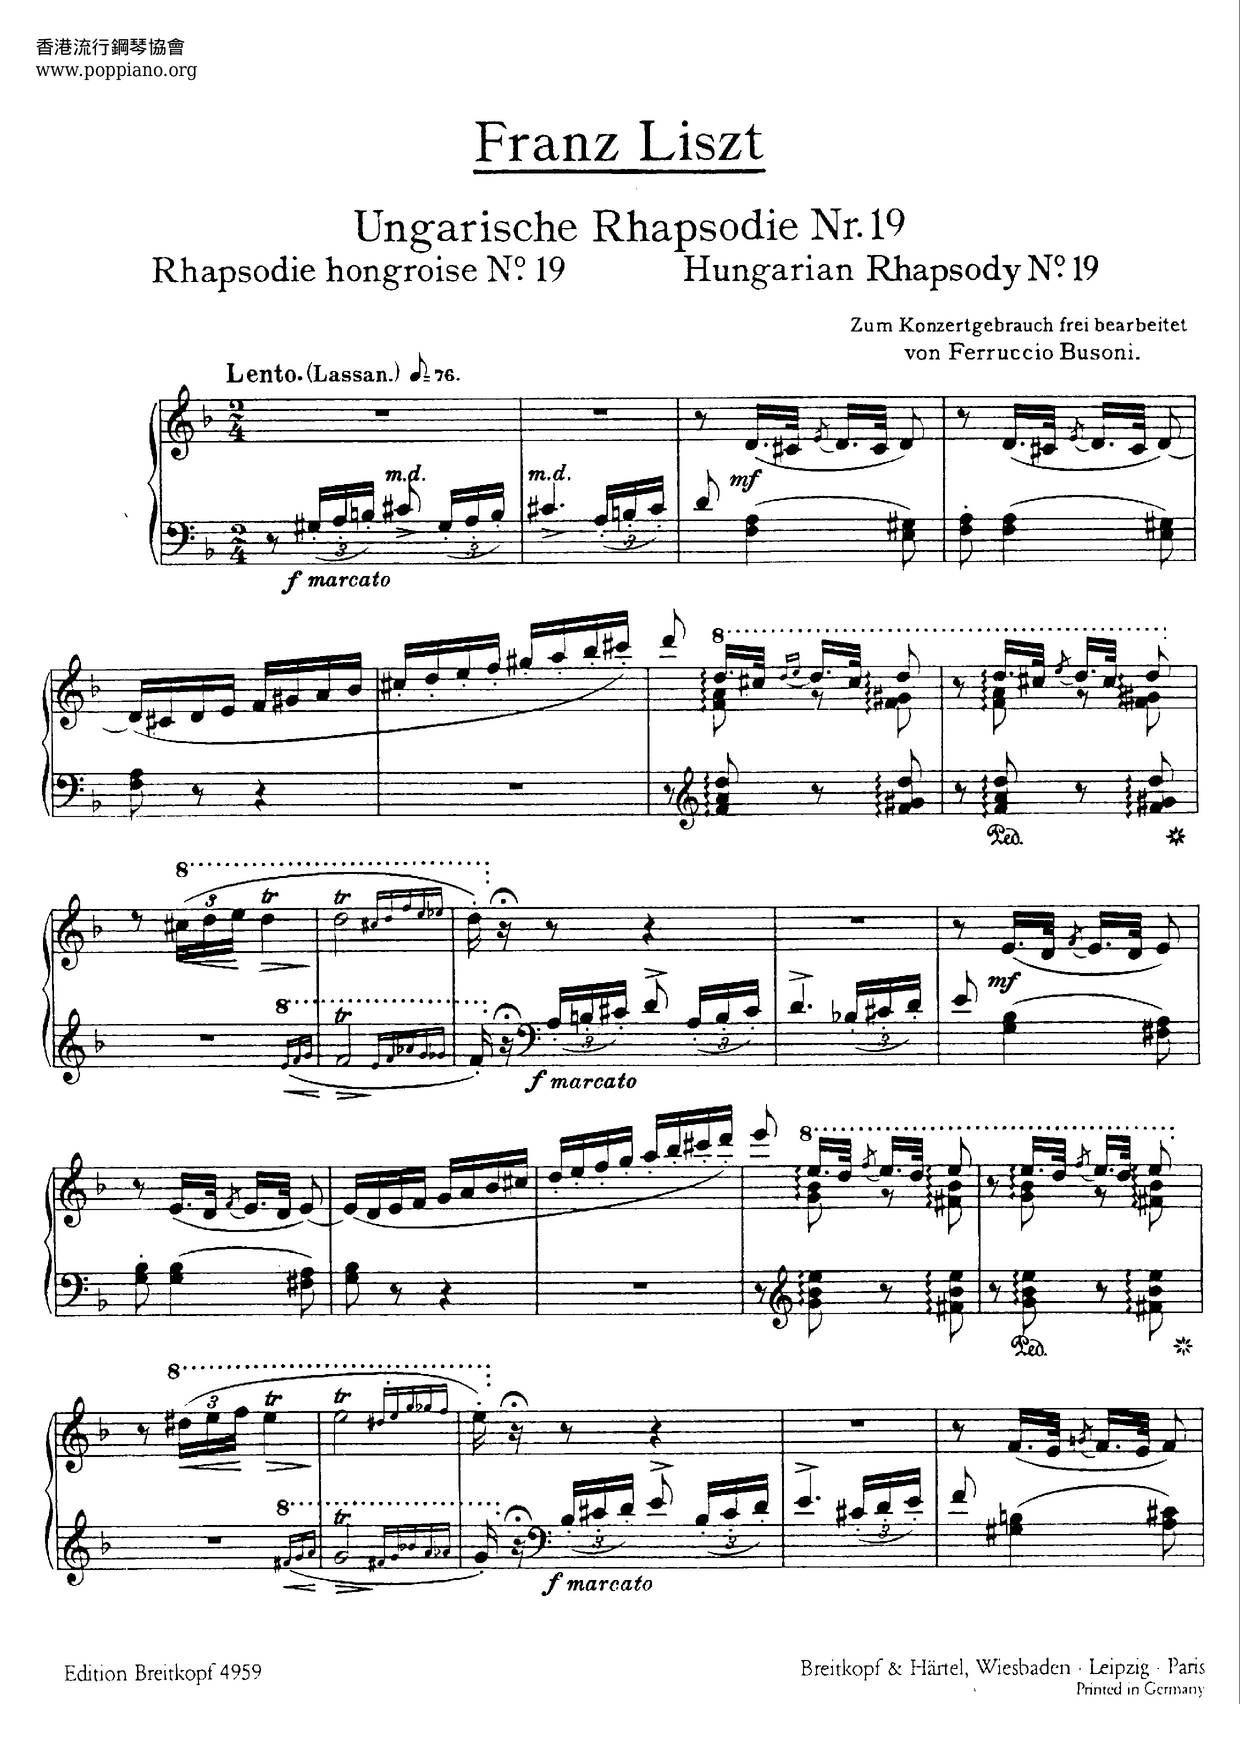 Hungarian Rhapsody No.19, S.244/19ピアノ譜